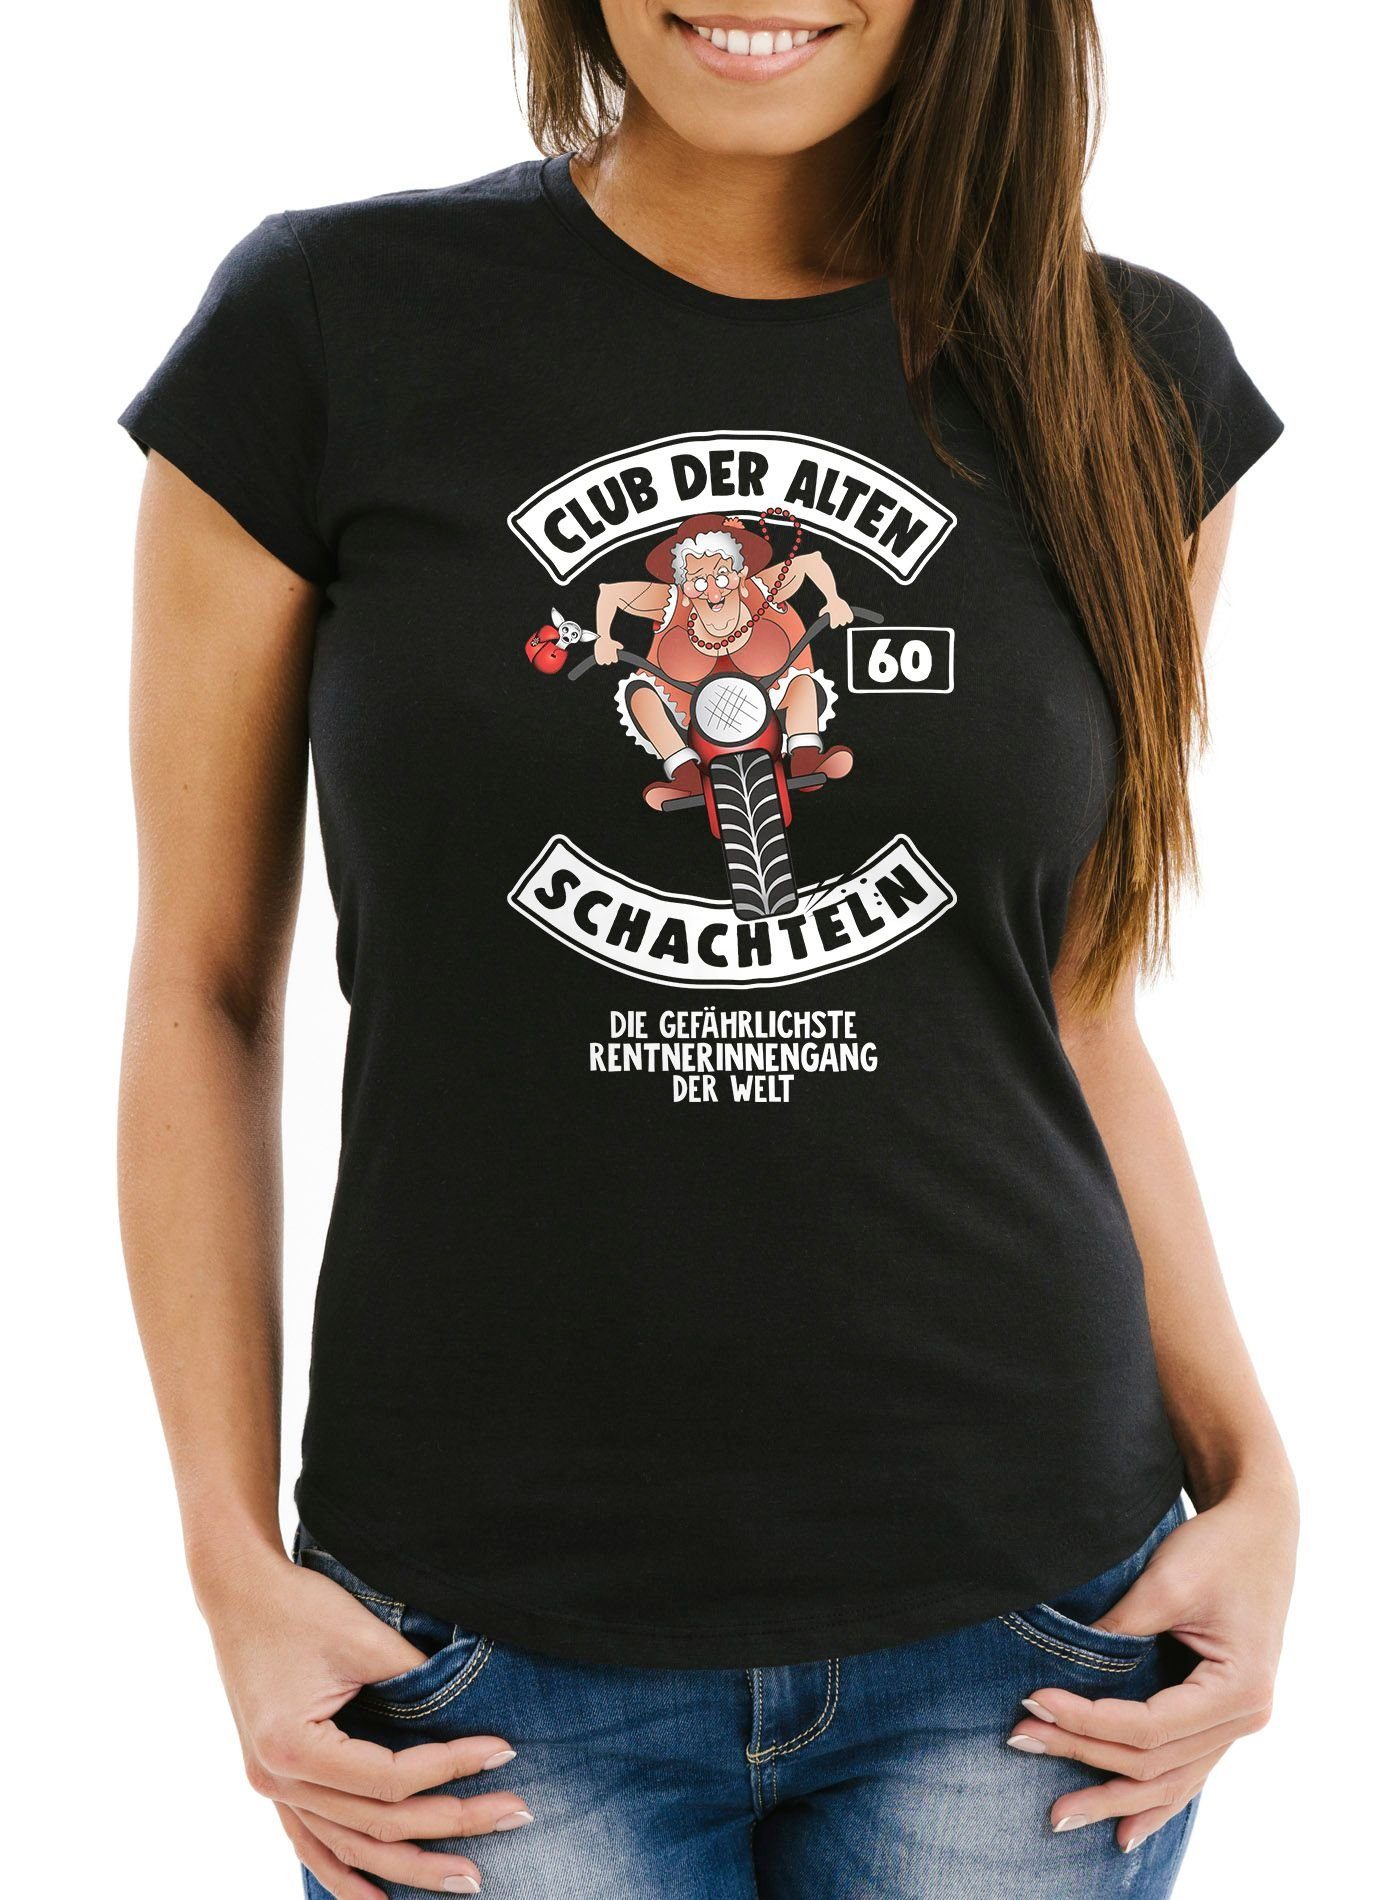 Der 60 Print-Shirt alten Runder schwarz Geburtstags-T-Shirt MoonWorks Schachteln Frauen Geschenk Moonworks® Club ältere Fun-Shirt mit für Geburtstag Print Damen